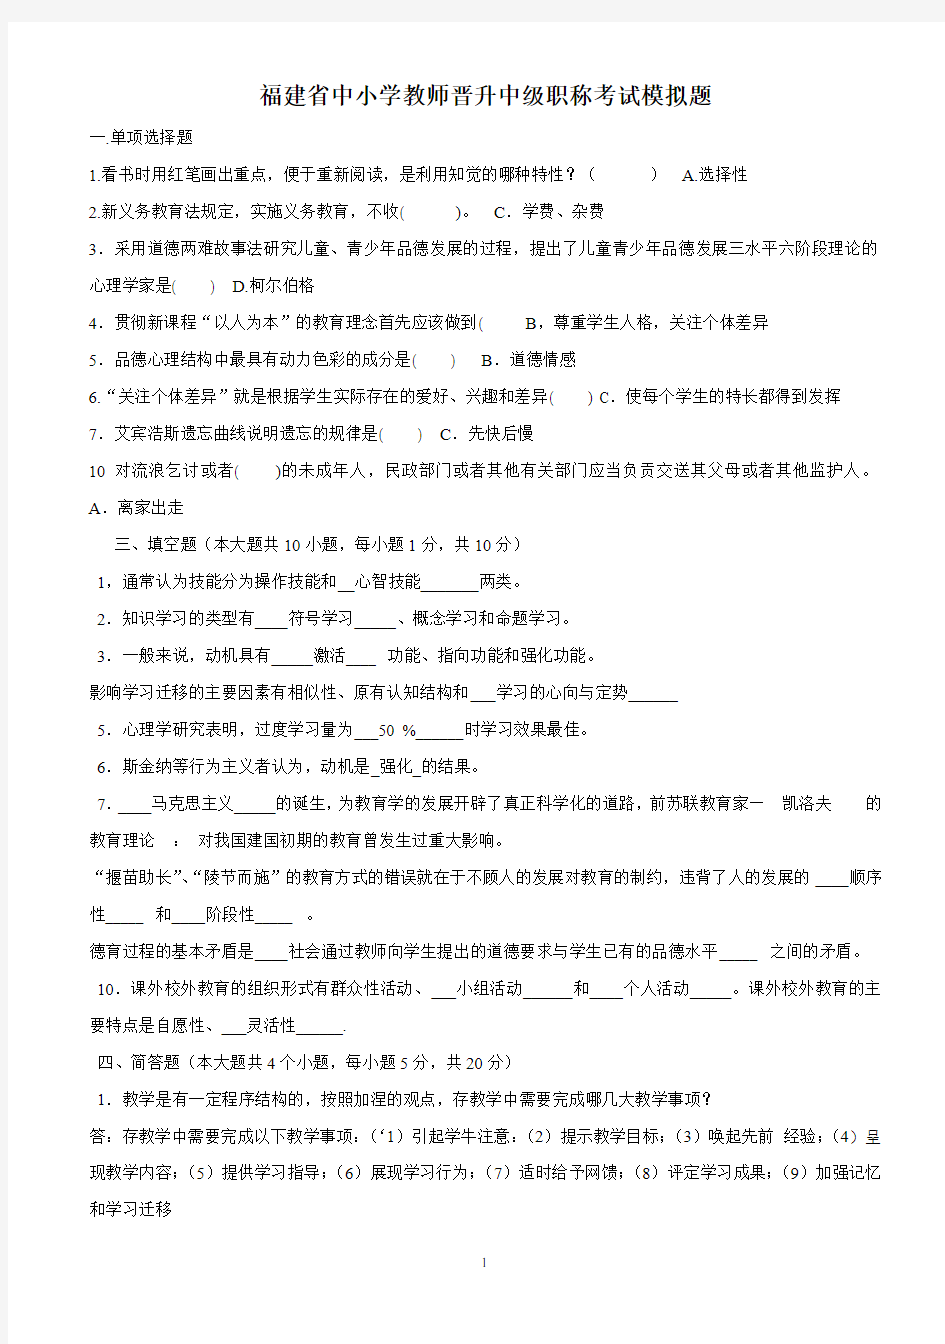 2018年福建省中小学教师晋升中级职称考试模拟题共七套(附答案)